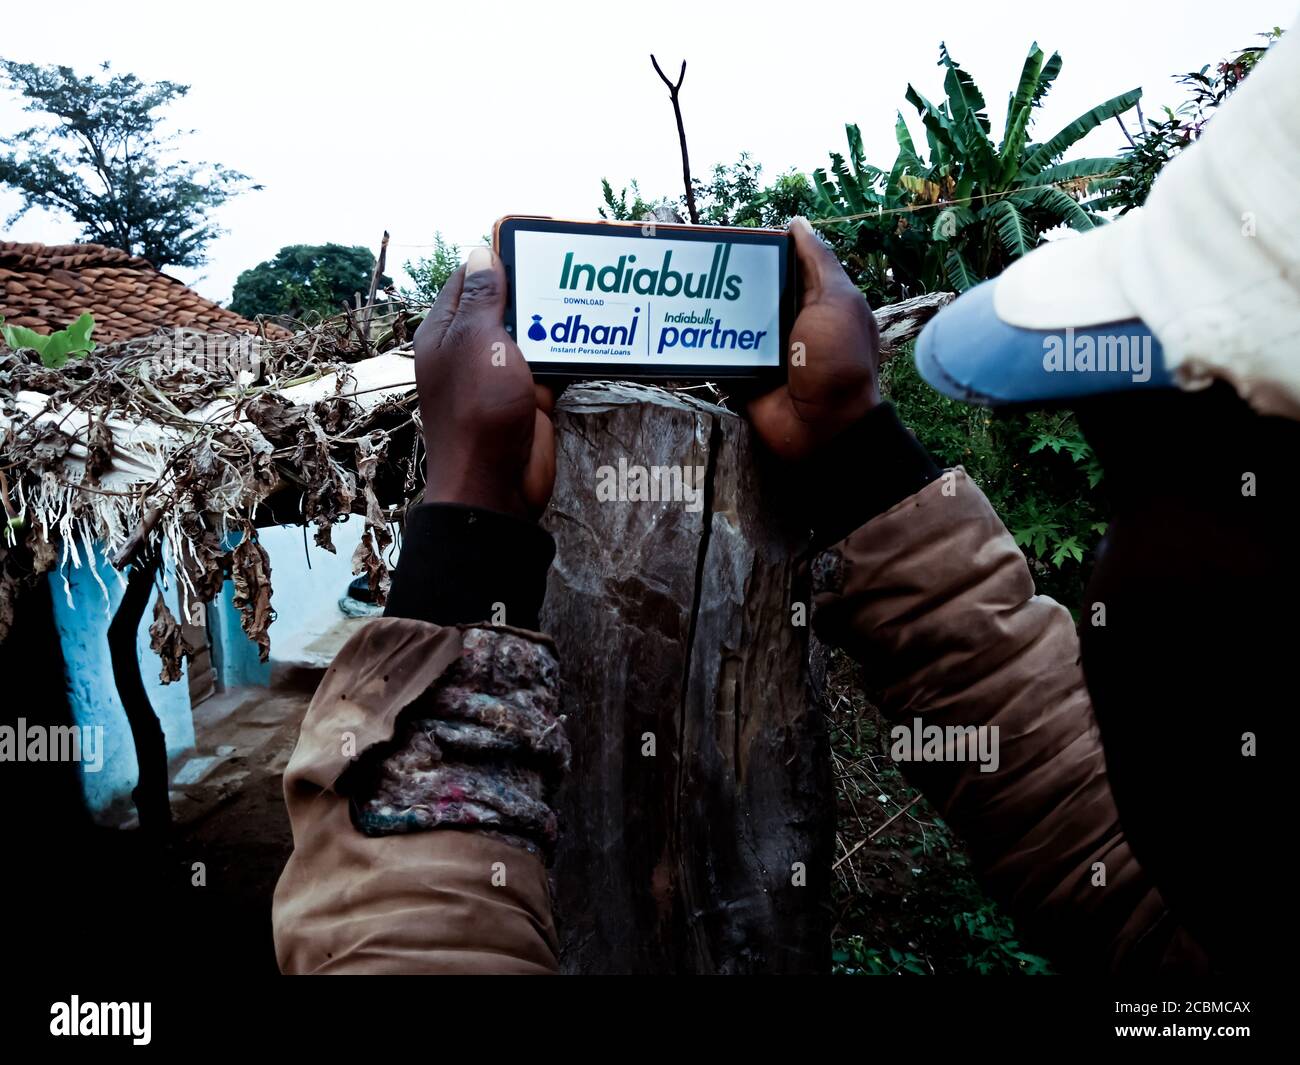 DISTRETTO KATNI, INDIA - 20 DICEMBRE 2019: Il conglomerato di Indabulls dhani il logo di prestito istantaneo presentato sullo schermo digitale del telefono intelligente dal villaggio indiano p Foto Stock